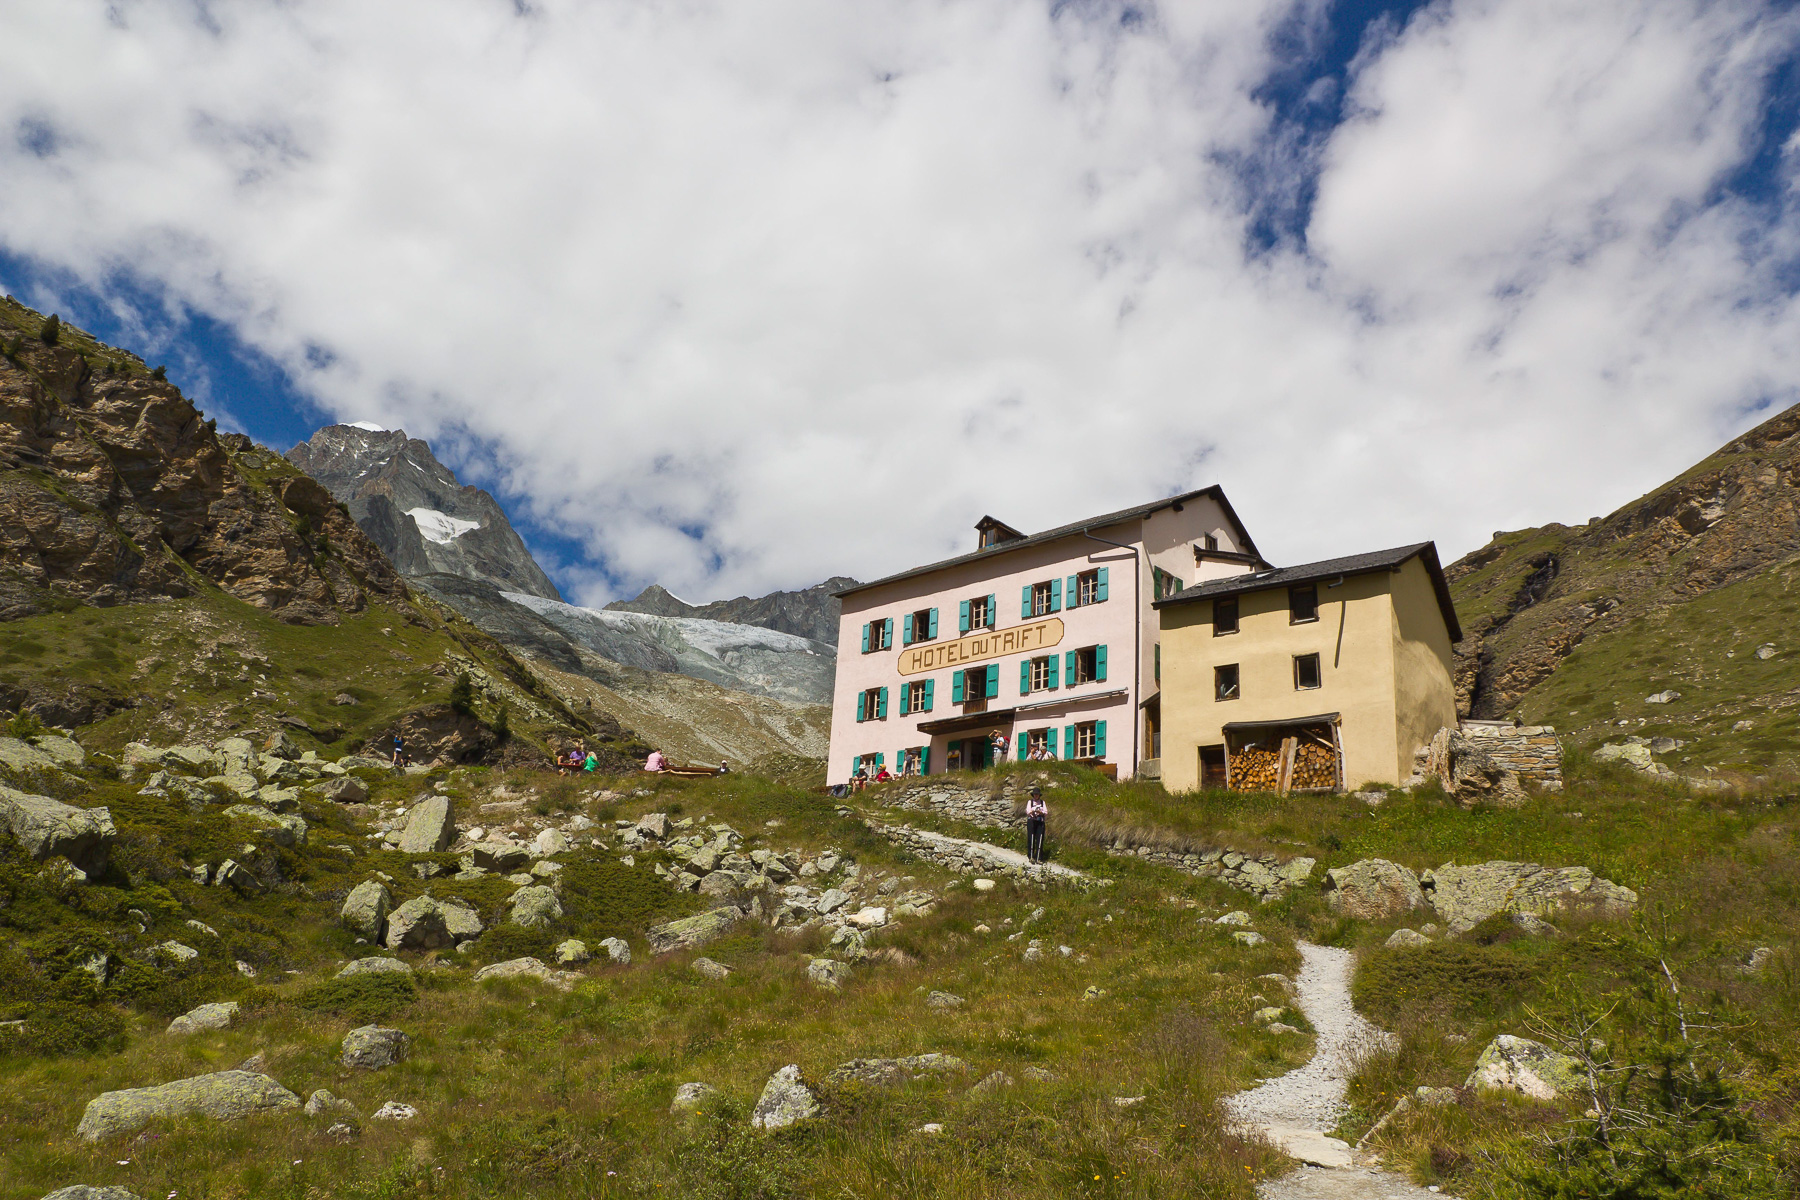 Eine altehrwürdige Unterkunft, die noch den Geist der alpinen Pionierzeit innehat.